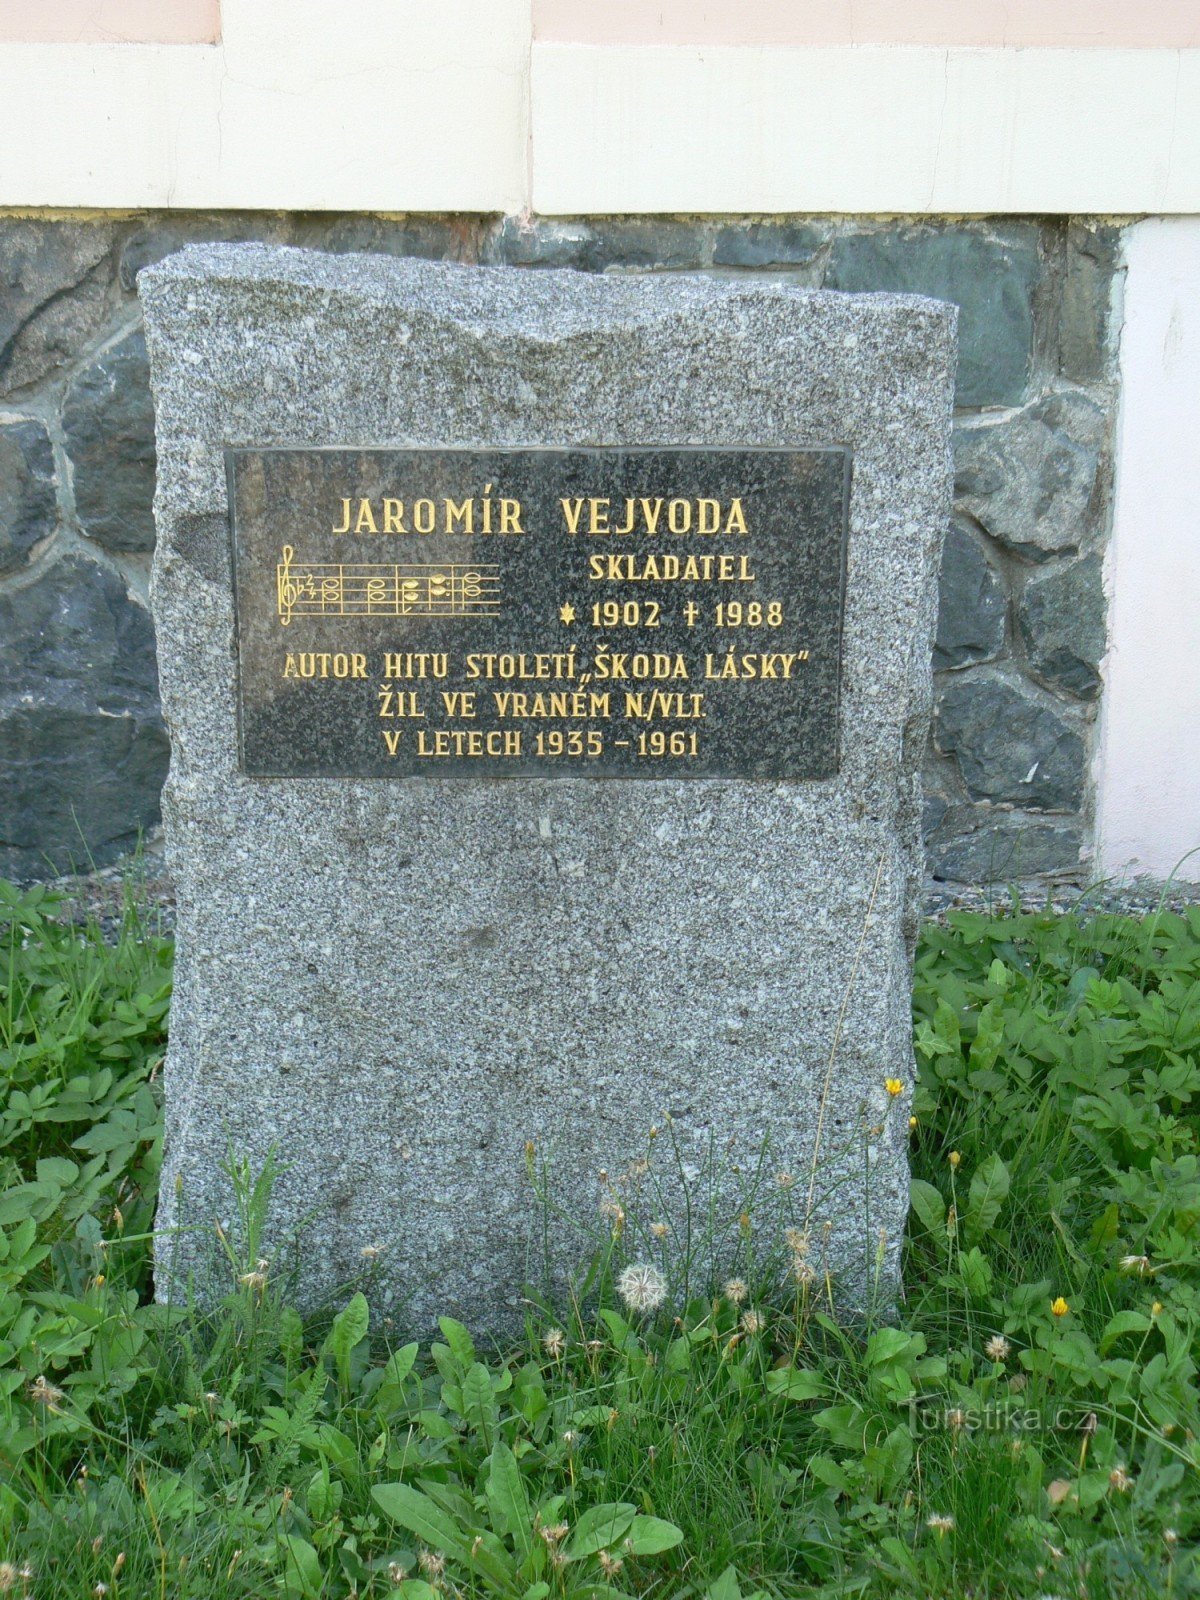 ヤロミール・ヴェイヴォーダの記念碑